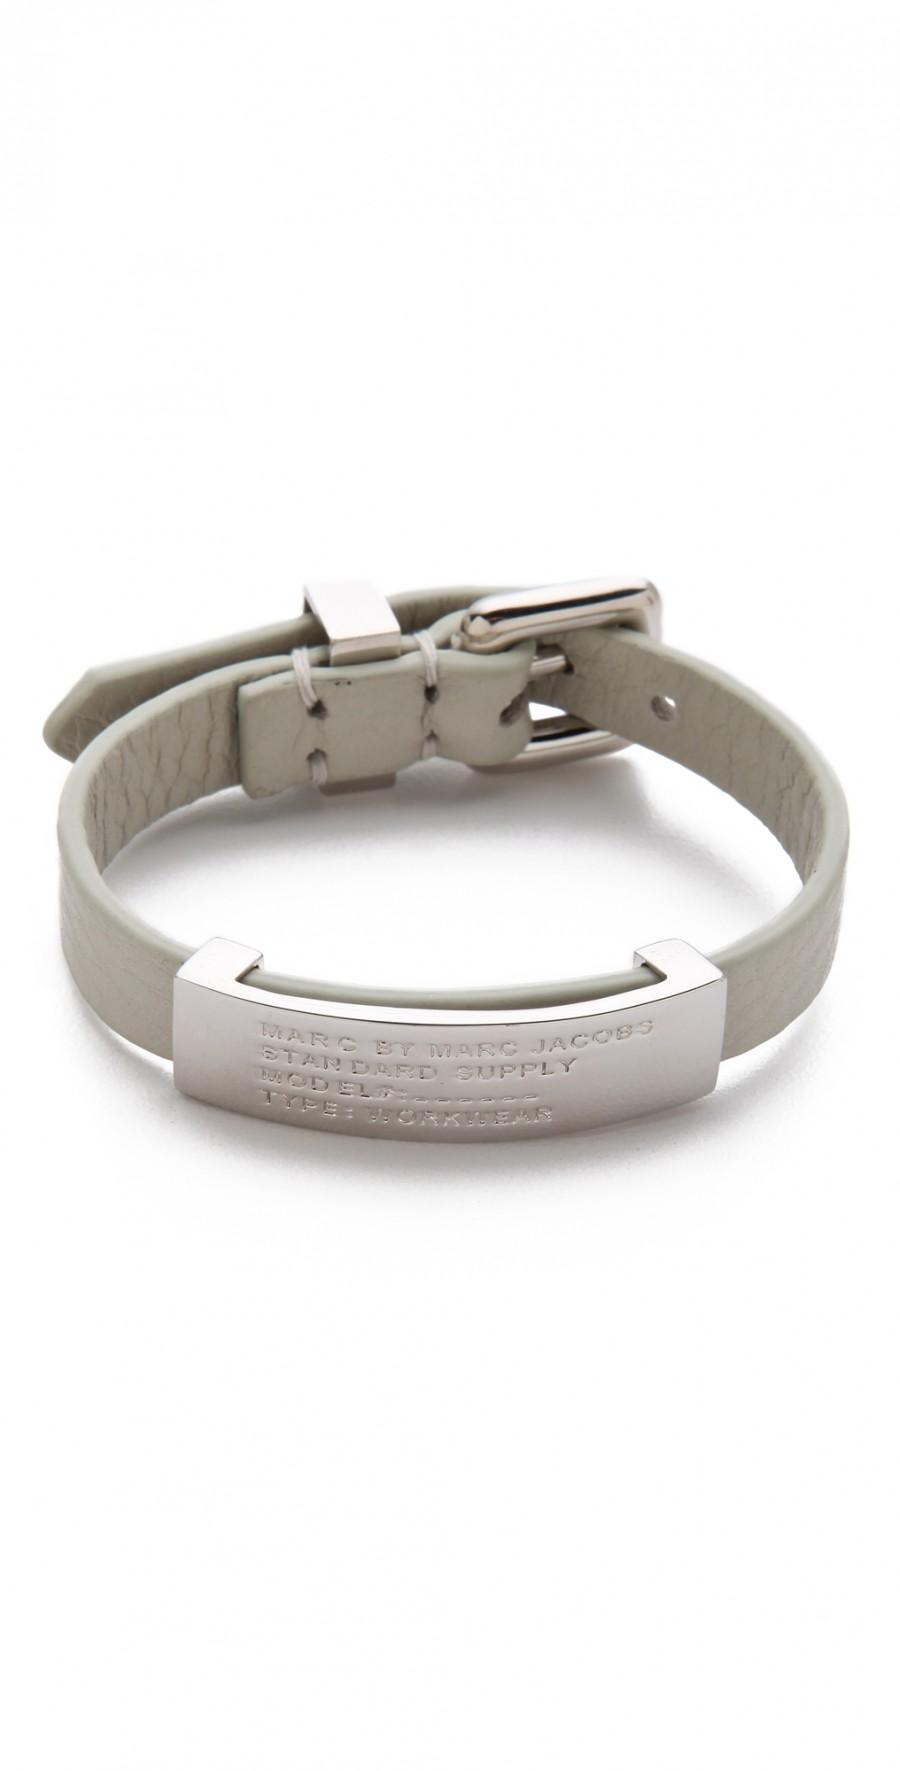 Hochzeit - Standard Supply ID Bracelet